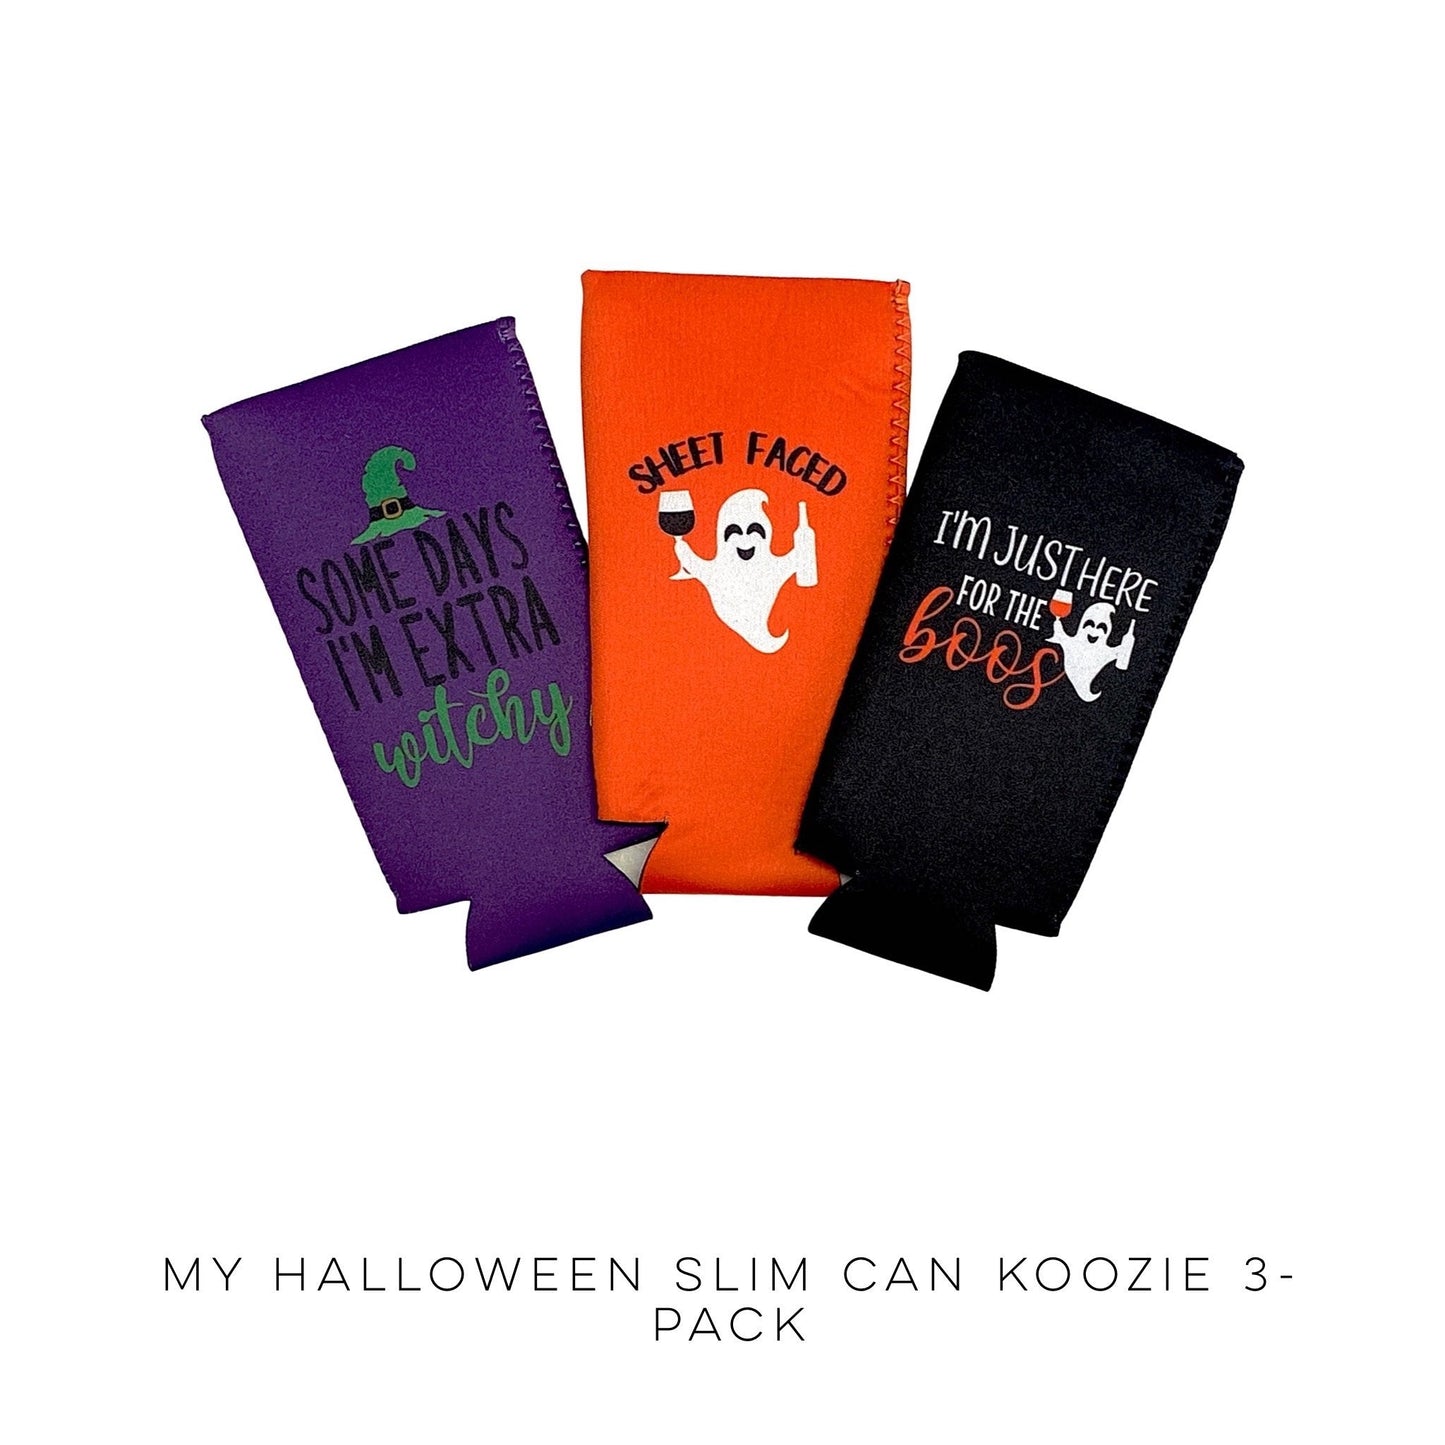 My Halloween Slim Can Koozie 3-Pack!